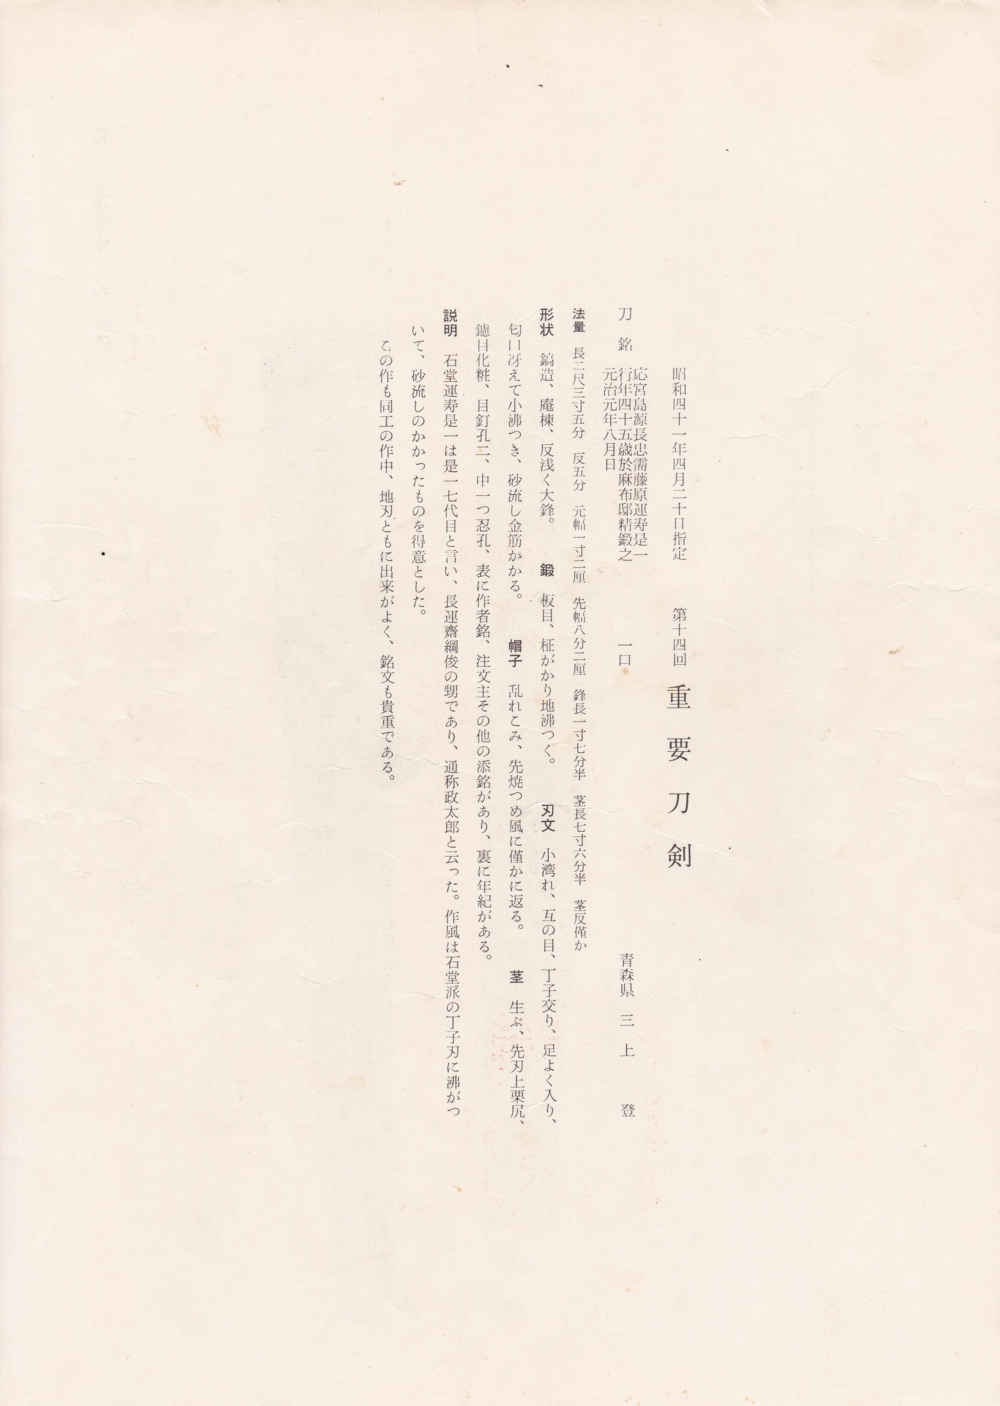 刀 応宮島源長忠需藤原運寿是一 行年四十五歳於麻布邸精鍛之 元治元年八月日 / Katana Fujiwara Unju Korekazu A.D.1864 Ordered with place 45years old work